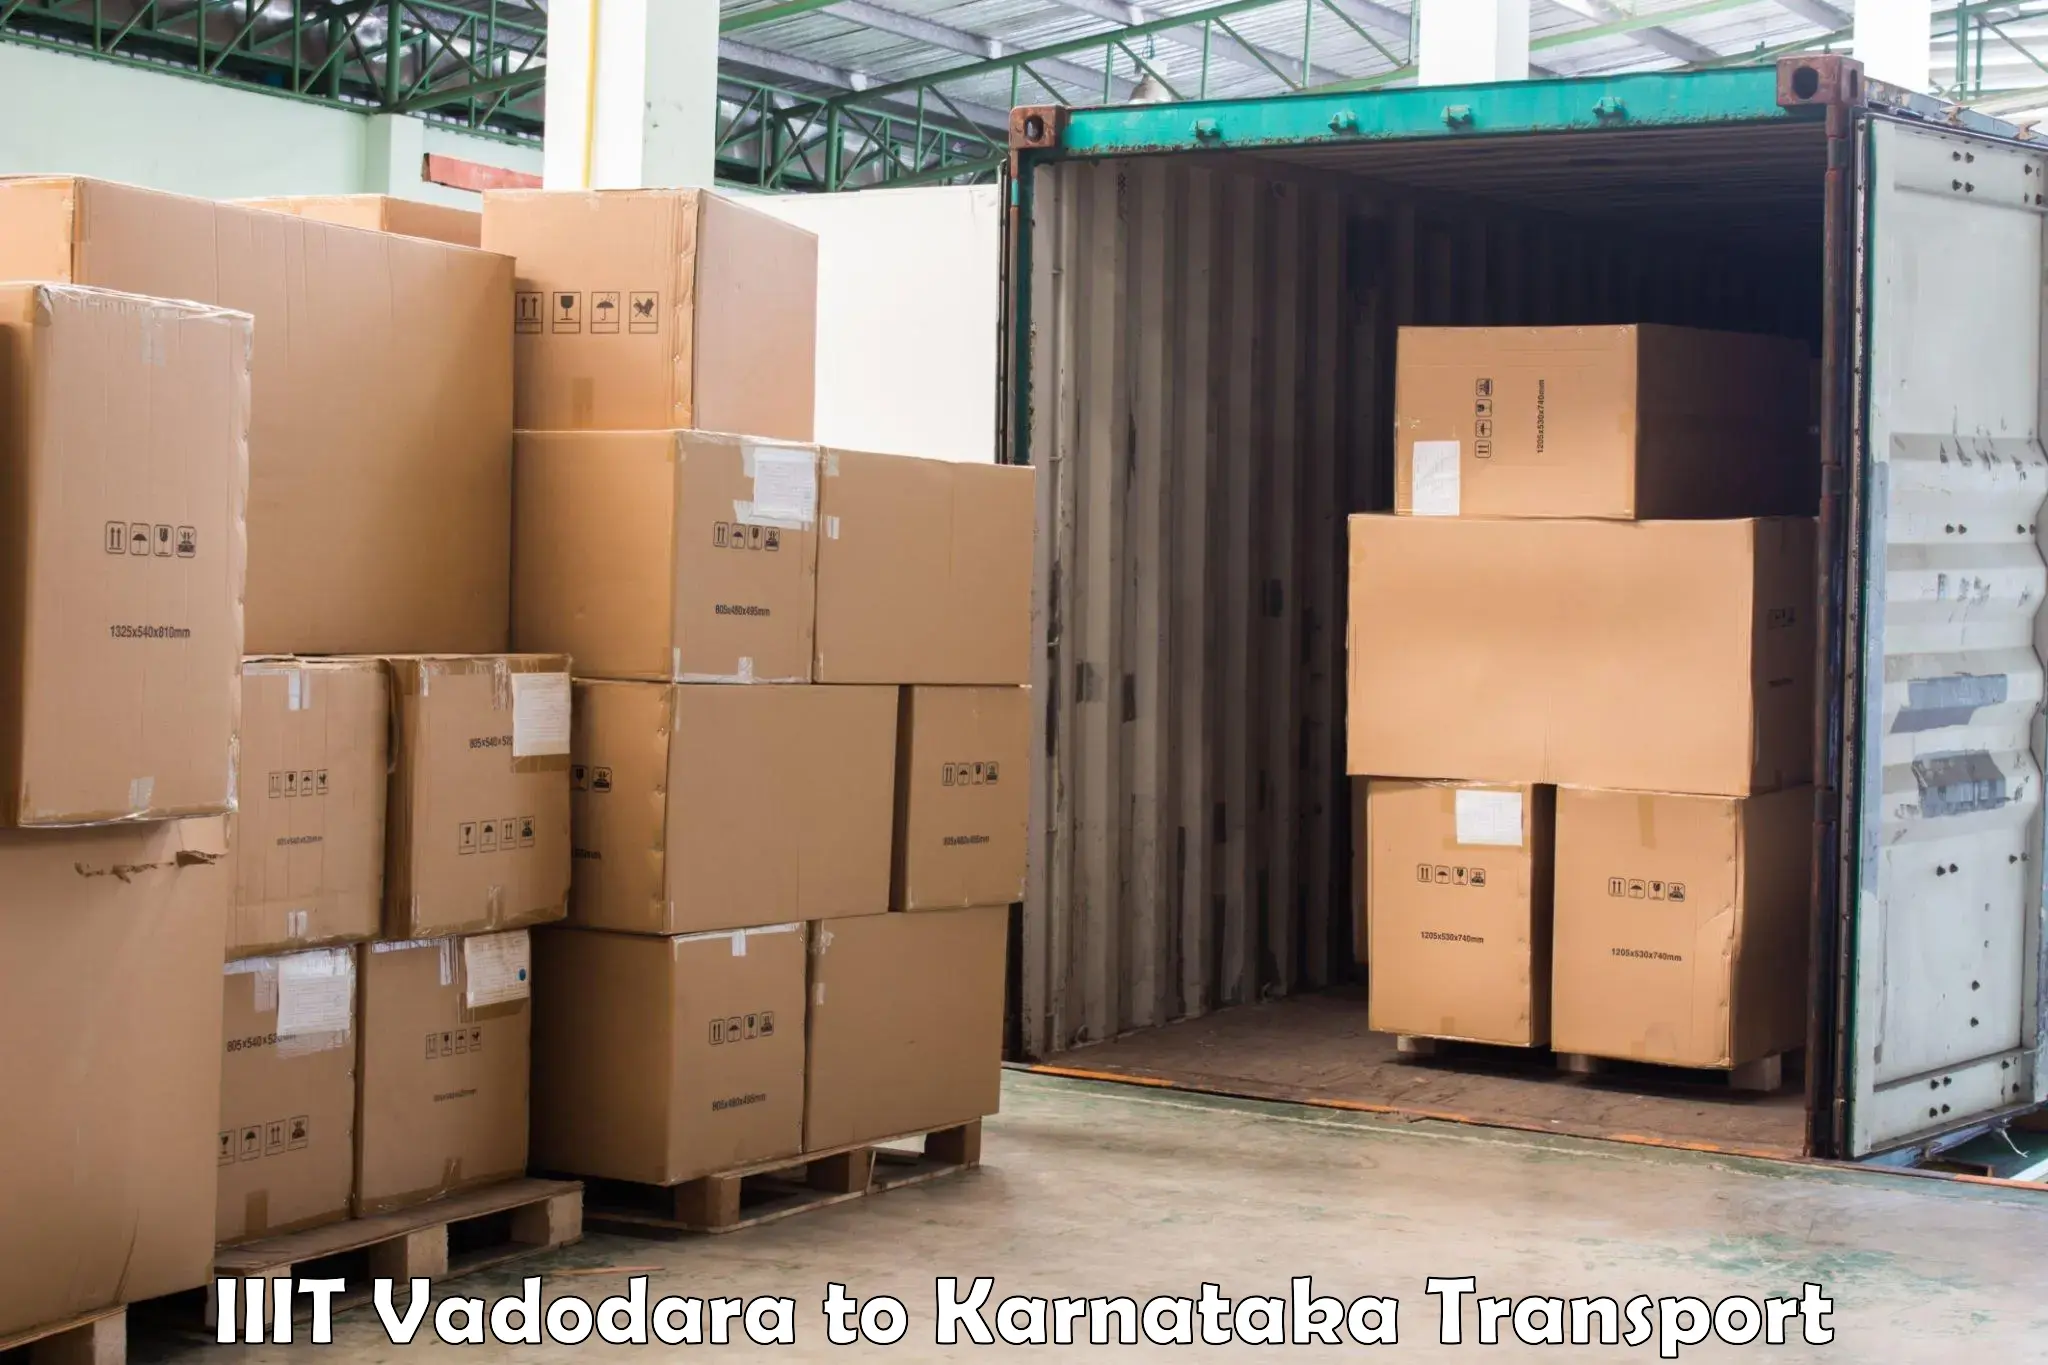 Express transport services IIIT Vadodara to Karnataka